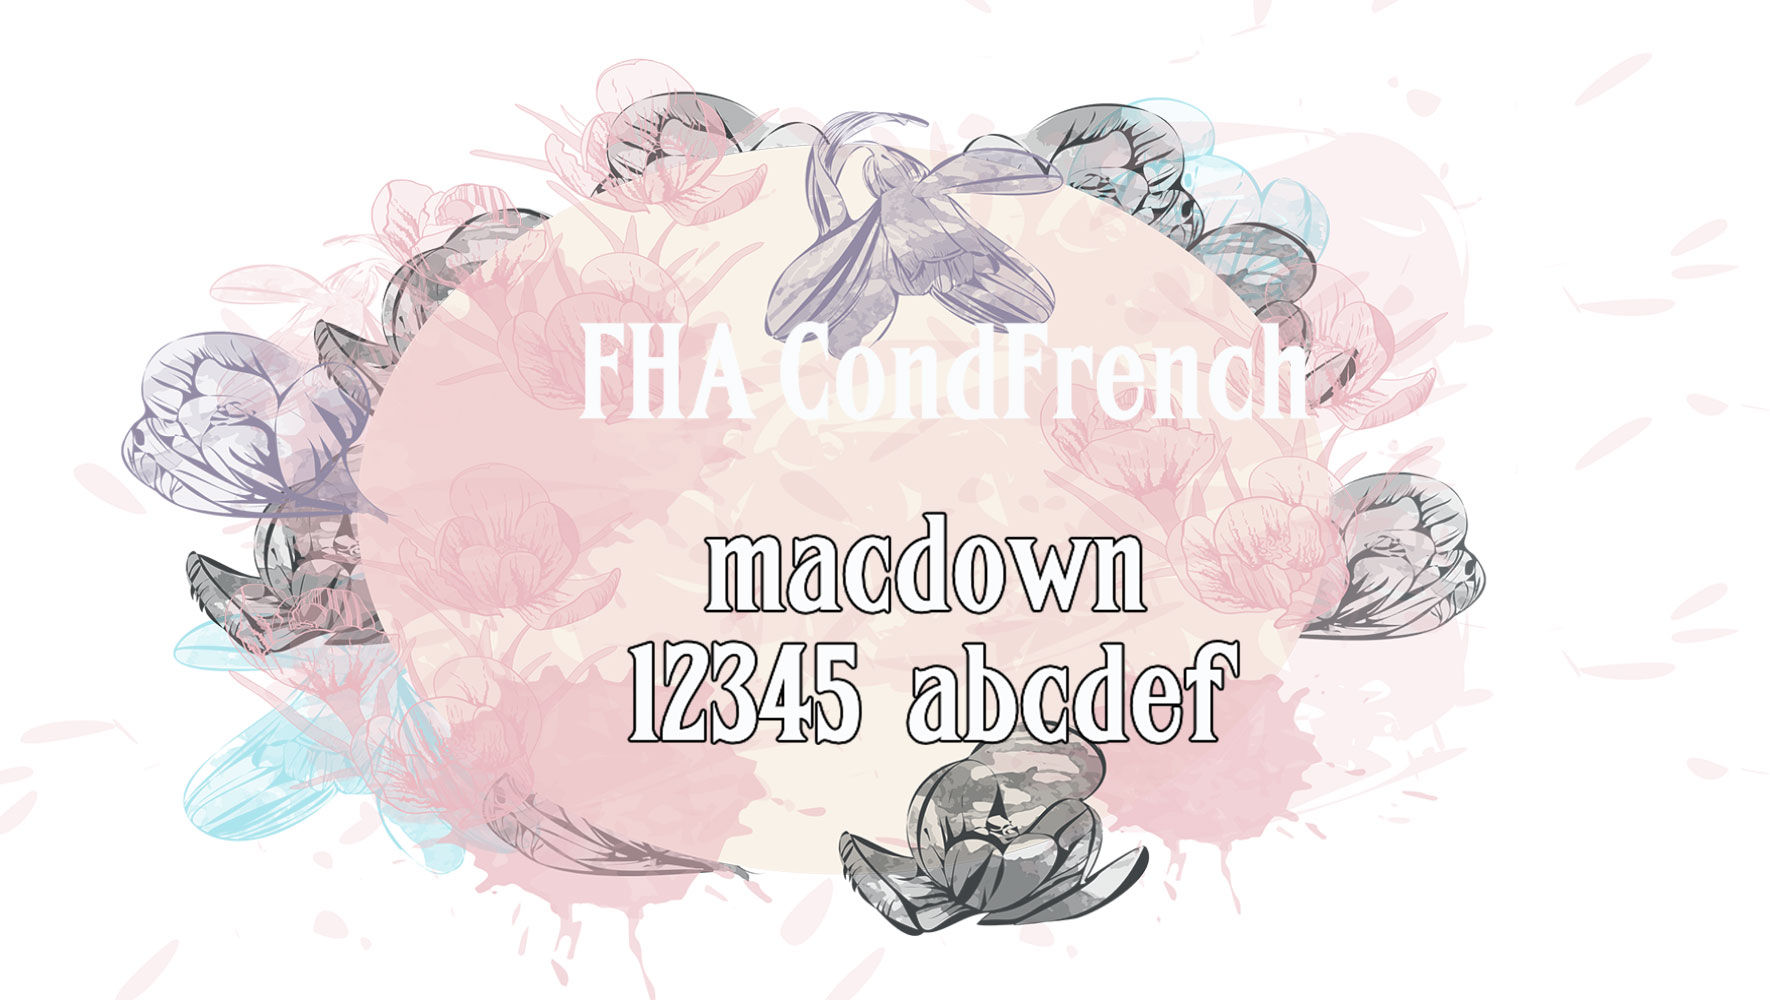 优雅整齐的衬线字体FHA Condensed French